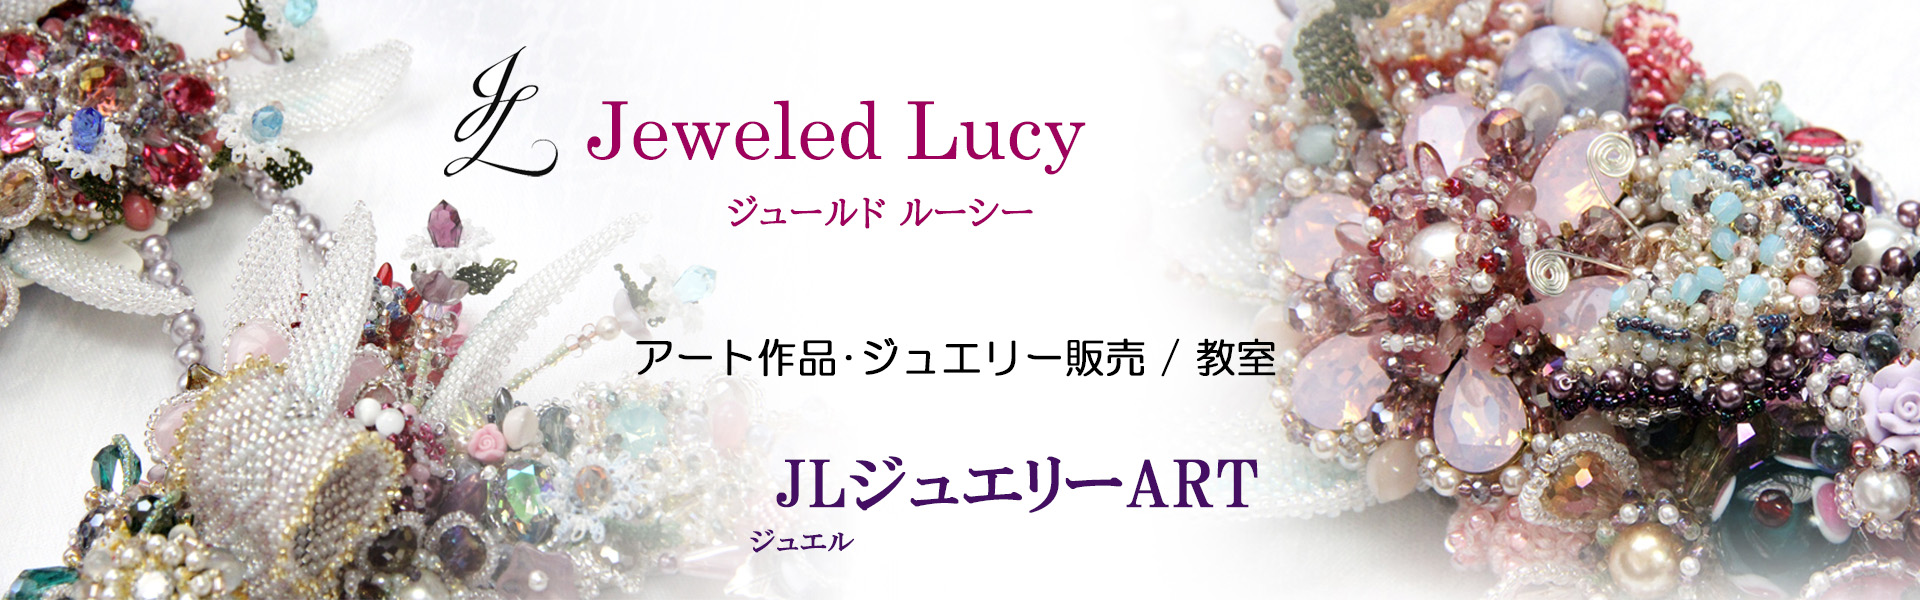 Jeweled Lucyジュールドルーシー、アート作品･ジュエリー販売/教室　JLジュエリーART、背景にジュエリーアート作品の写真